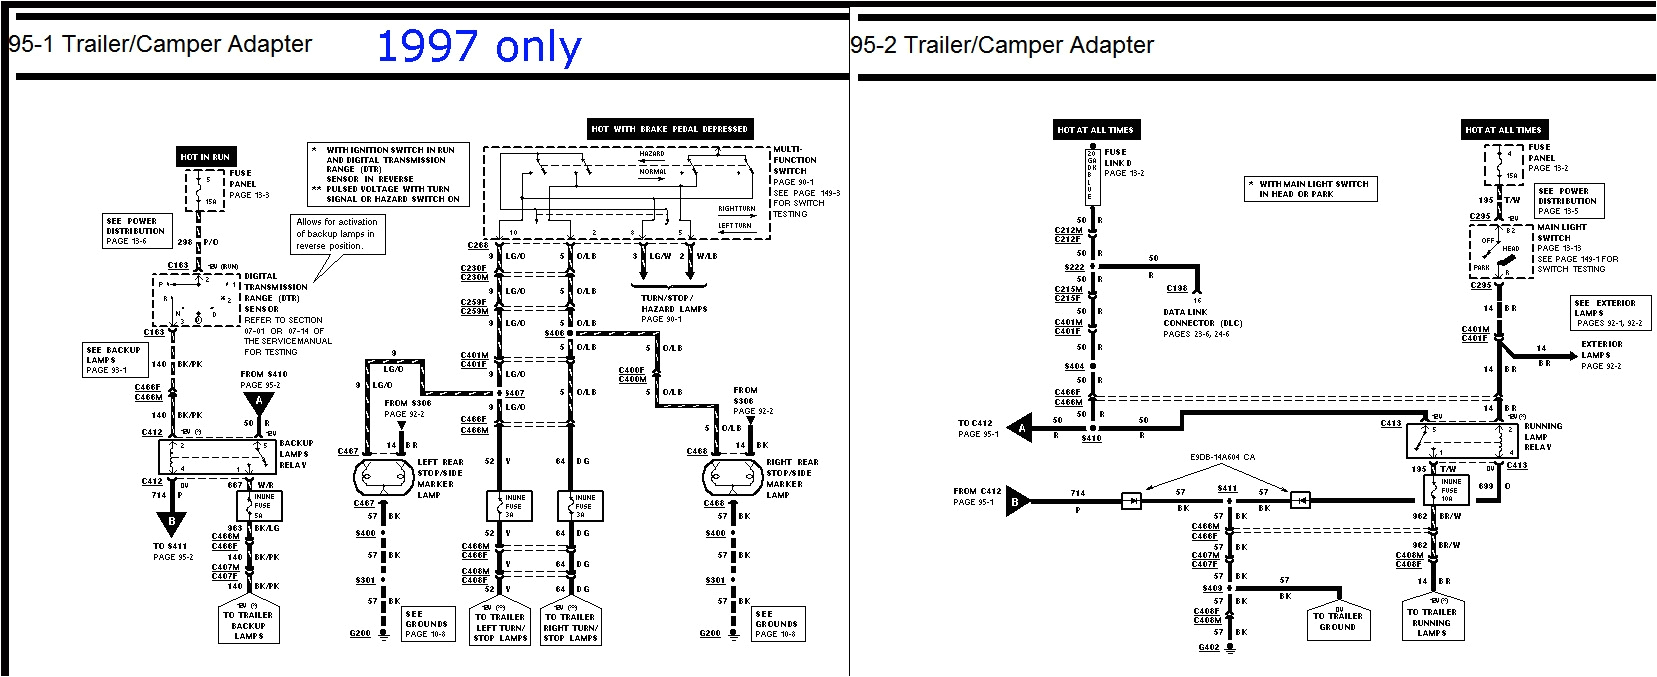 97 f150 trailer wiring diagram 1997 ford f250 wiring diagram mihella 1997 ford f150 trailer wiring diagram beautiful 1973 1979 15j jpg